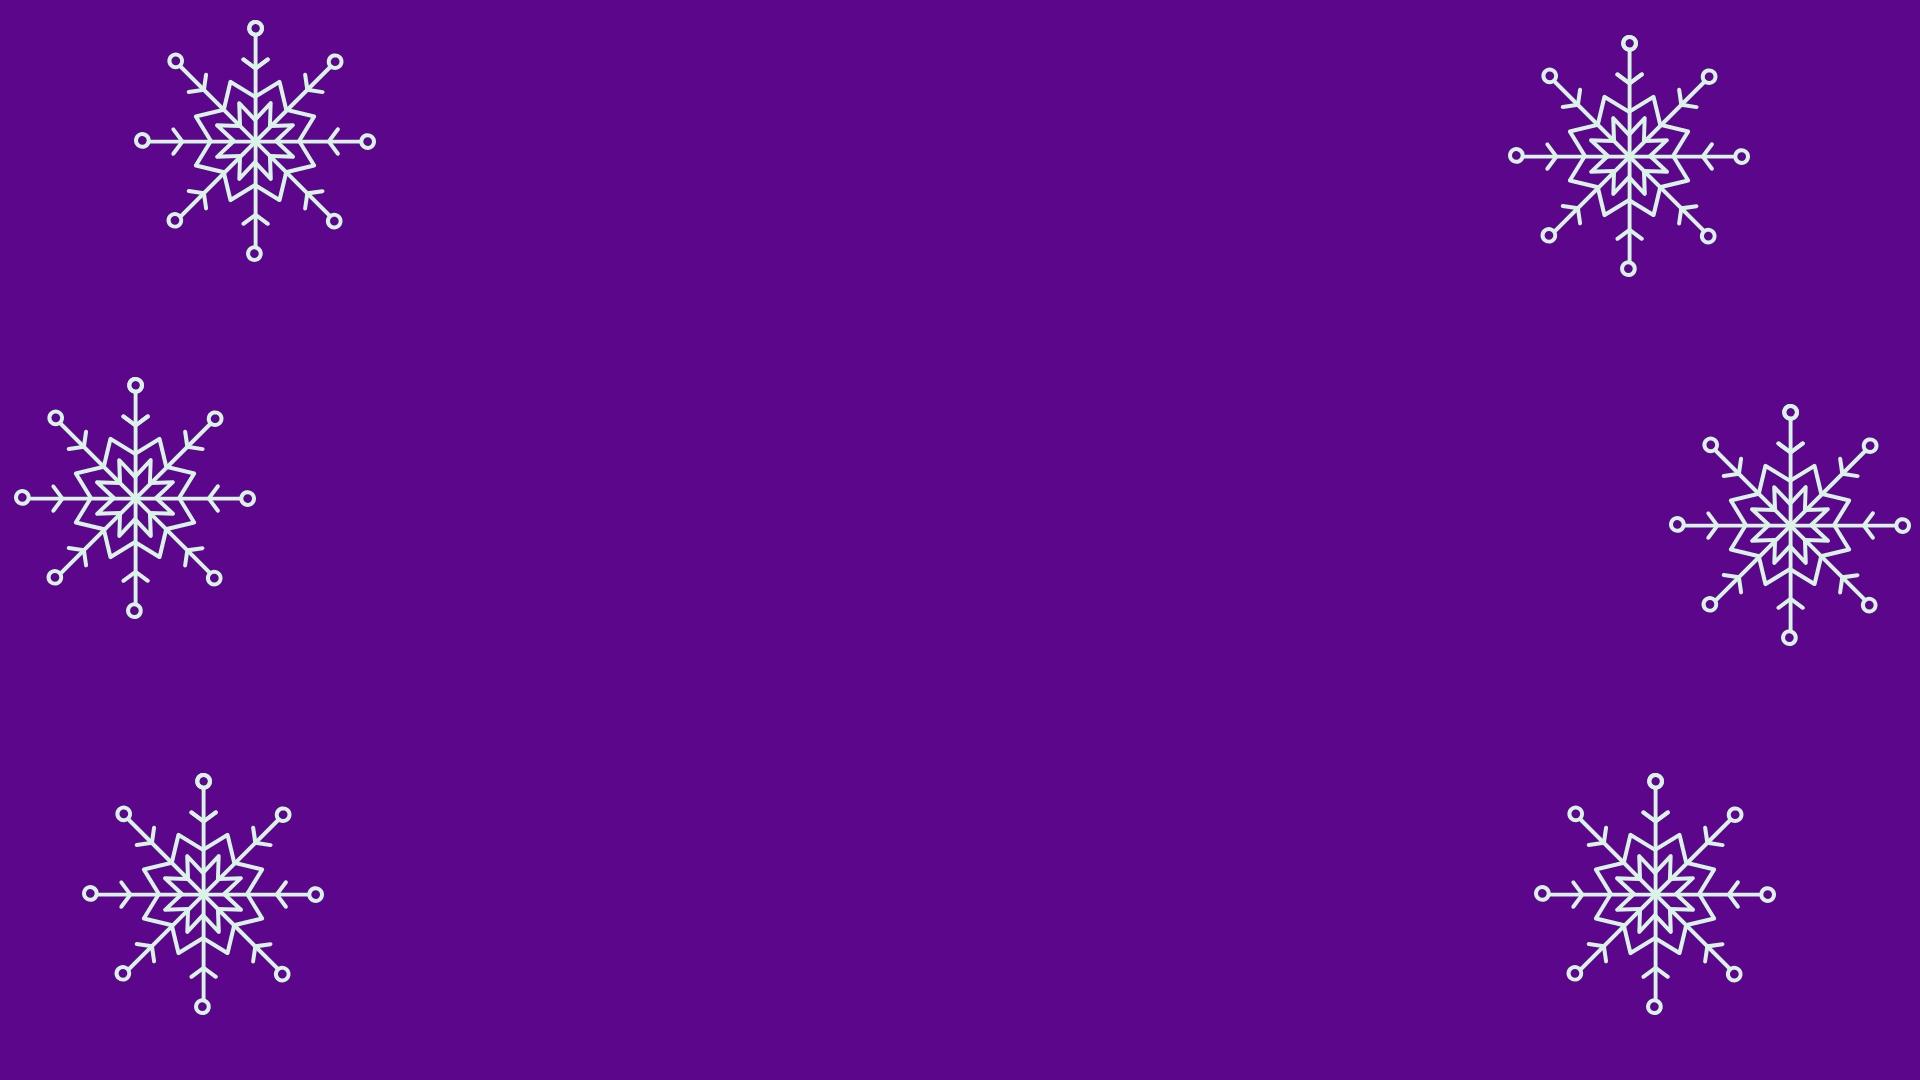 white snowflakes on purple background 